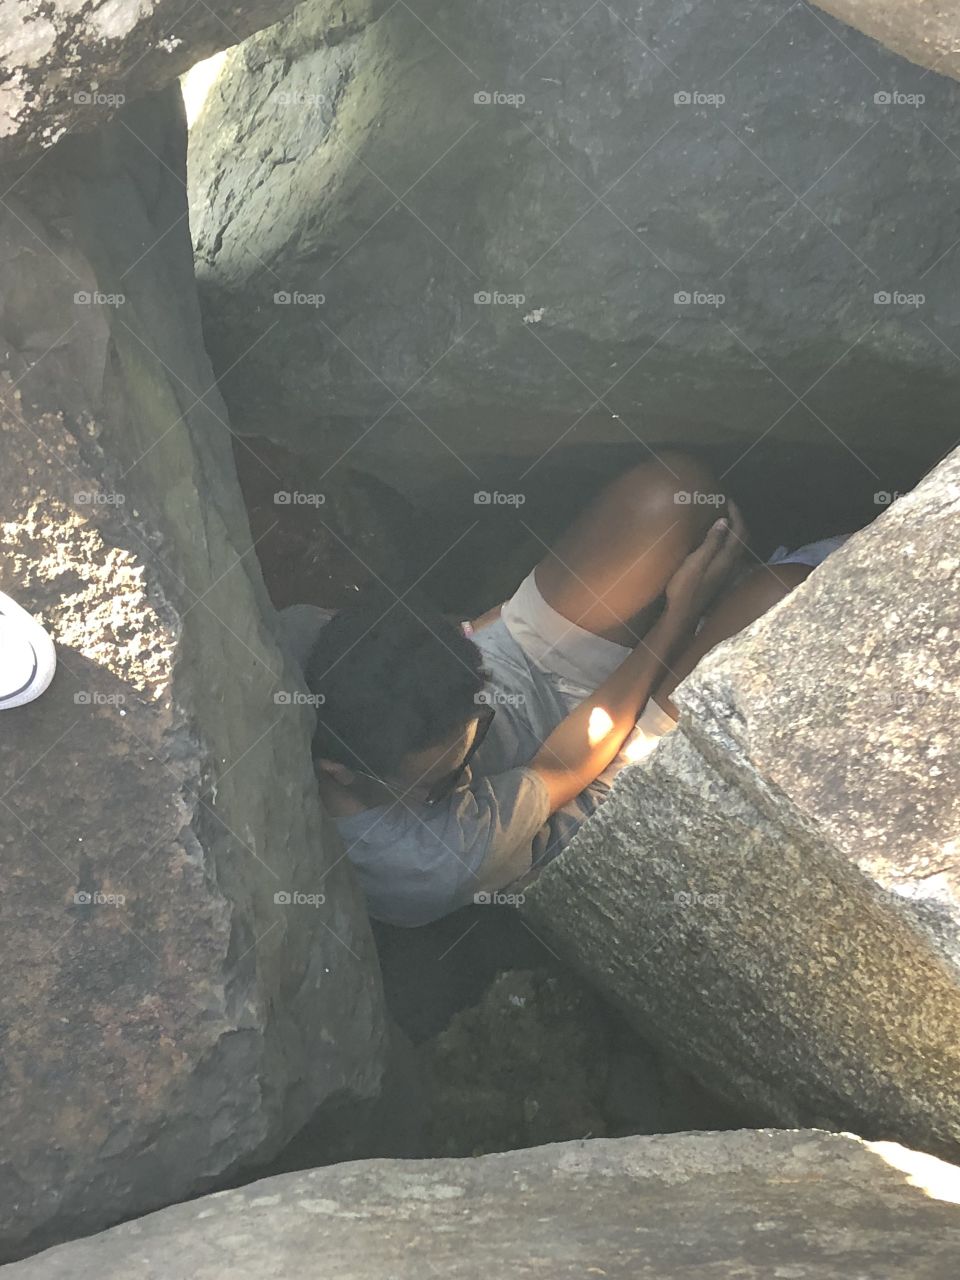 Hiding in the rocks